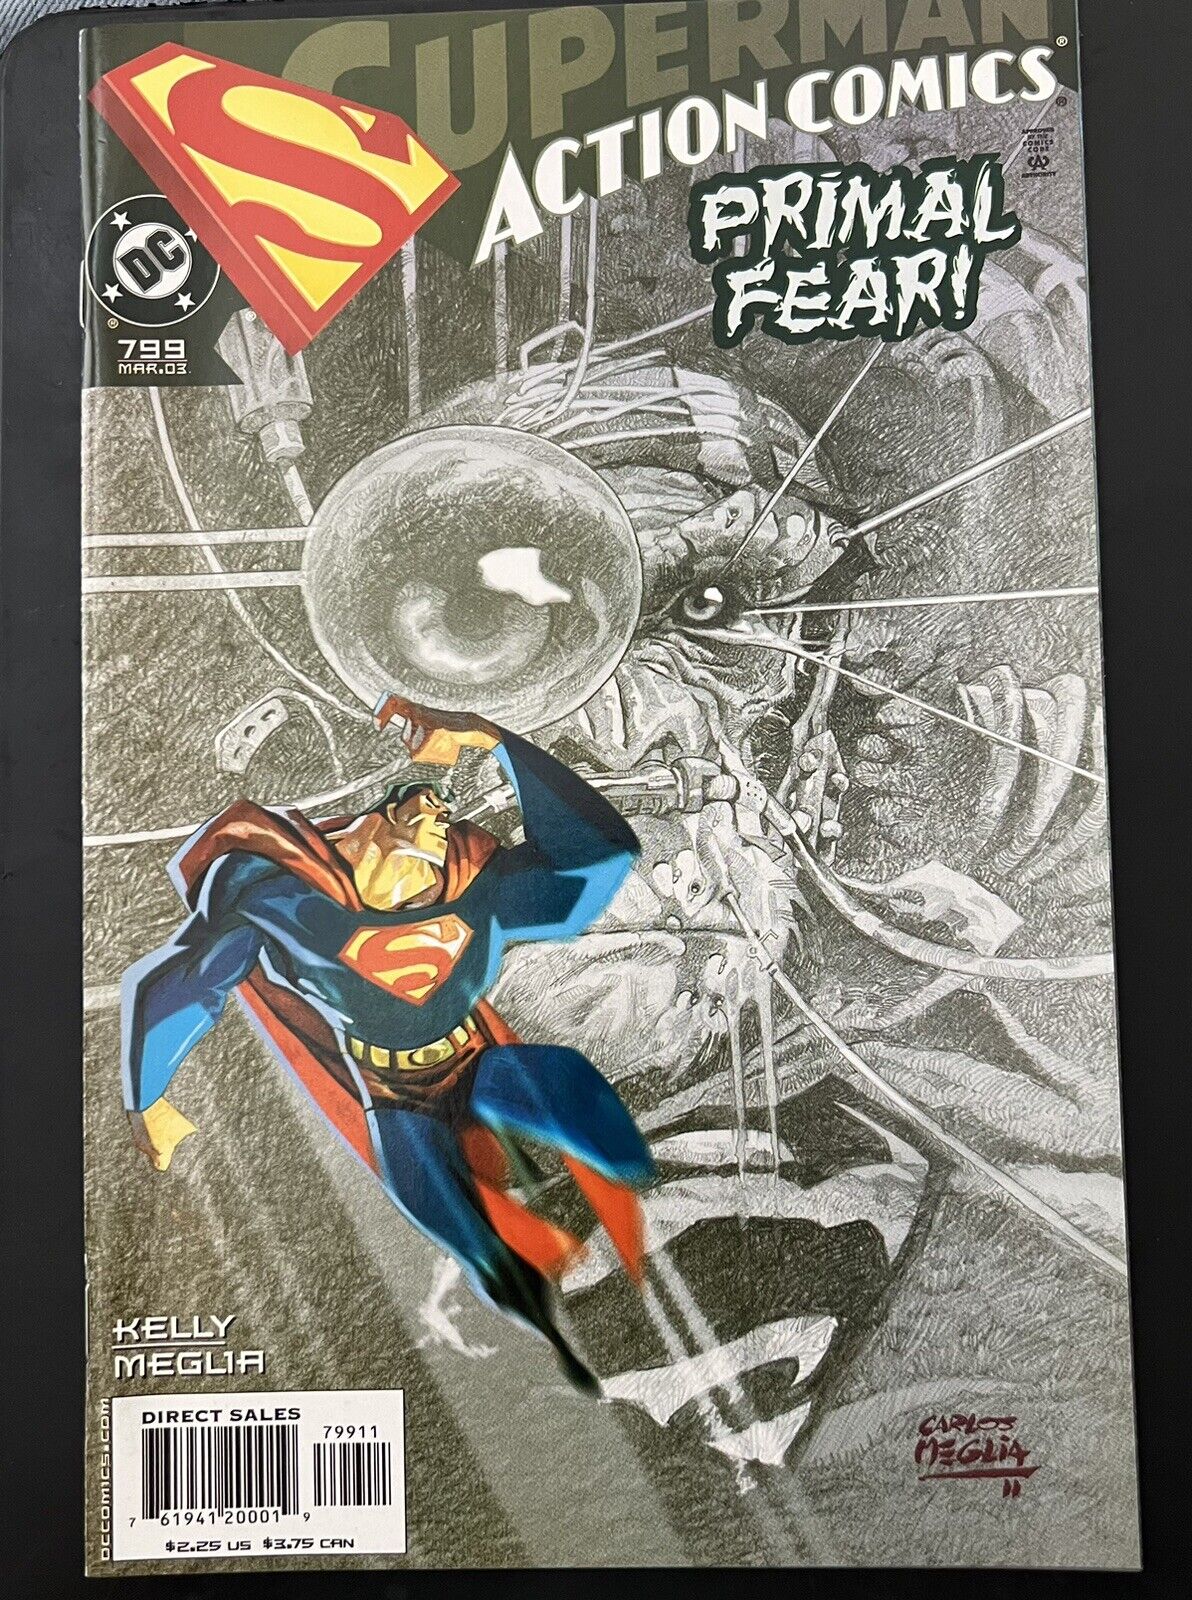 Superman Action Comics Primal Fear ~ No. 799, March 2003 ~ DC Comics ~ NEW